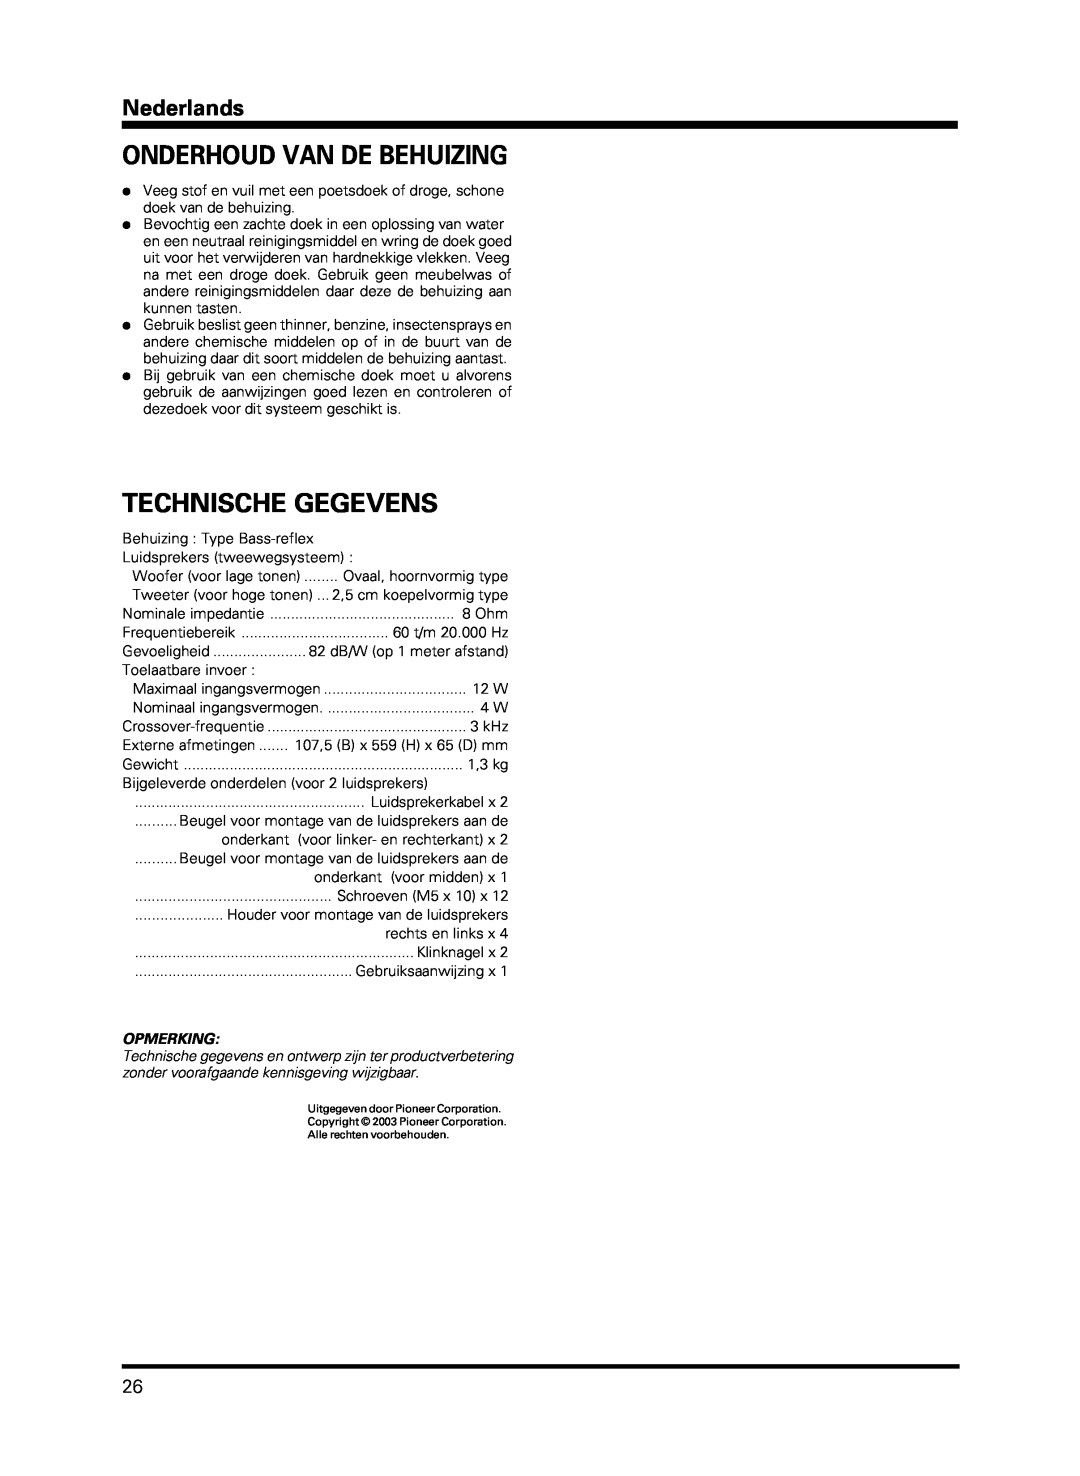 Pioneer PDP-S13-LR manual Onderhoud Van De Behuizing, Technische Gegevens, Nederlands, Opmerking, Tweeter voor hoge tonen 